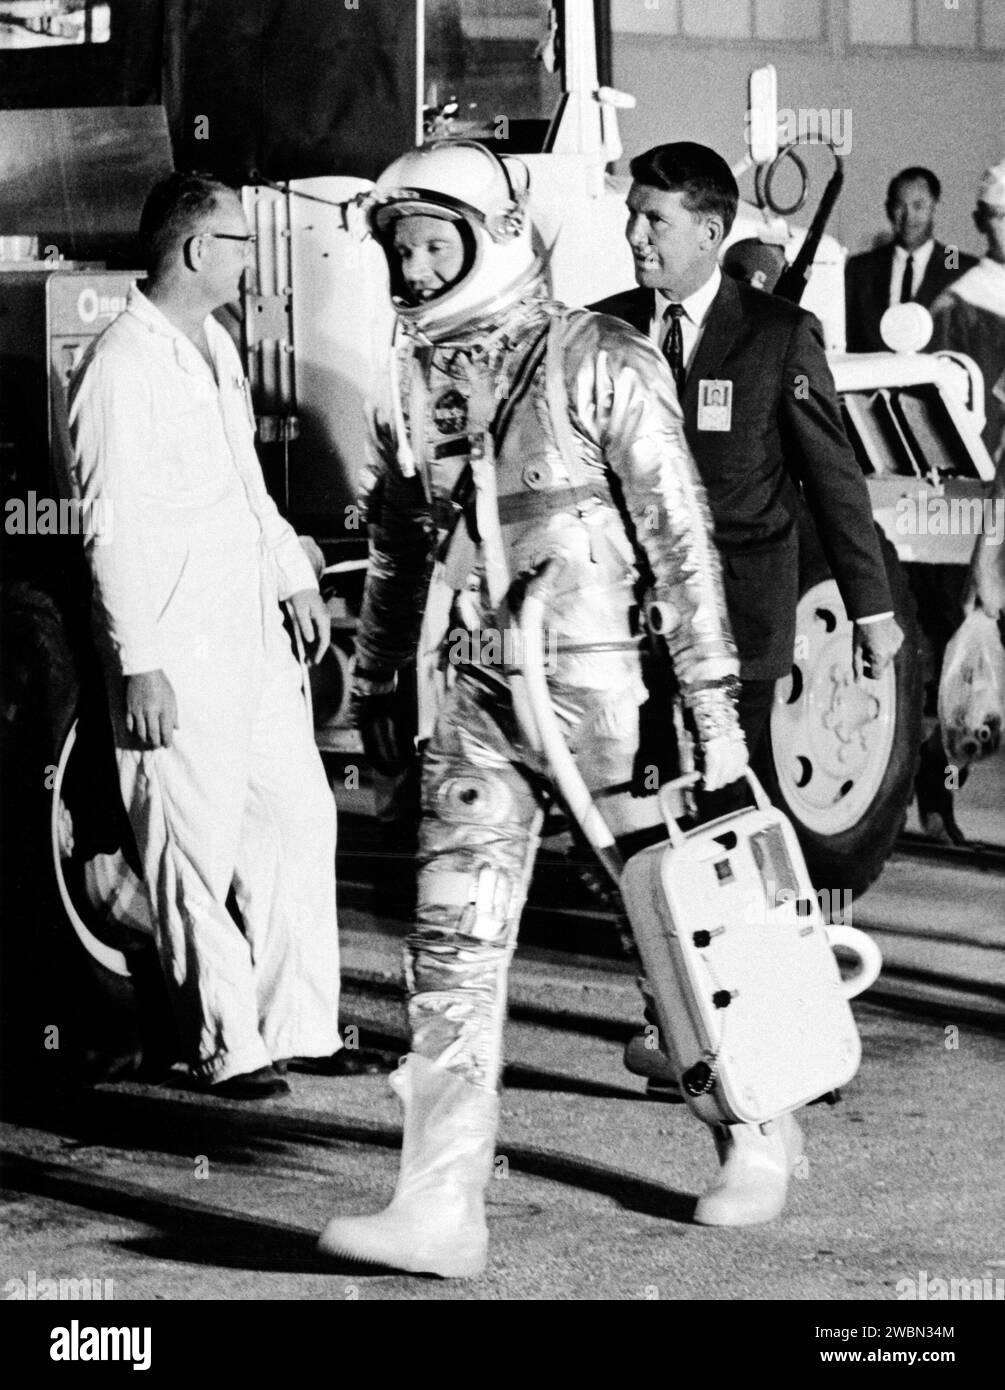 KENNEDY SPACE CENTER, FLA. -- per il secondo giorno consecutivo, l'astronauta L. Gordon Cooper Jr. Parte alle 4 55 EST dal suo alloggio a Hangar 'S' per andare al Launch Pad 14 per la quarta missione orbitale terrestre con equipaggio. Dopo essere stato lanciato a bordo di un Mercury Atlas, l'astronauta Cooper orbita attorno alla Terra 22 volte. Seguendo l'astronauta Cooper al furgone di trasferimento c'è l'astronauta Walter Schirra. Foto Stock